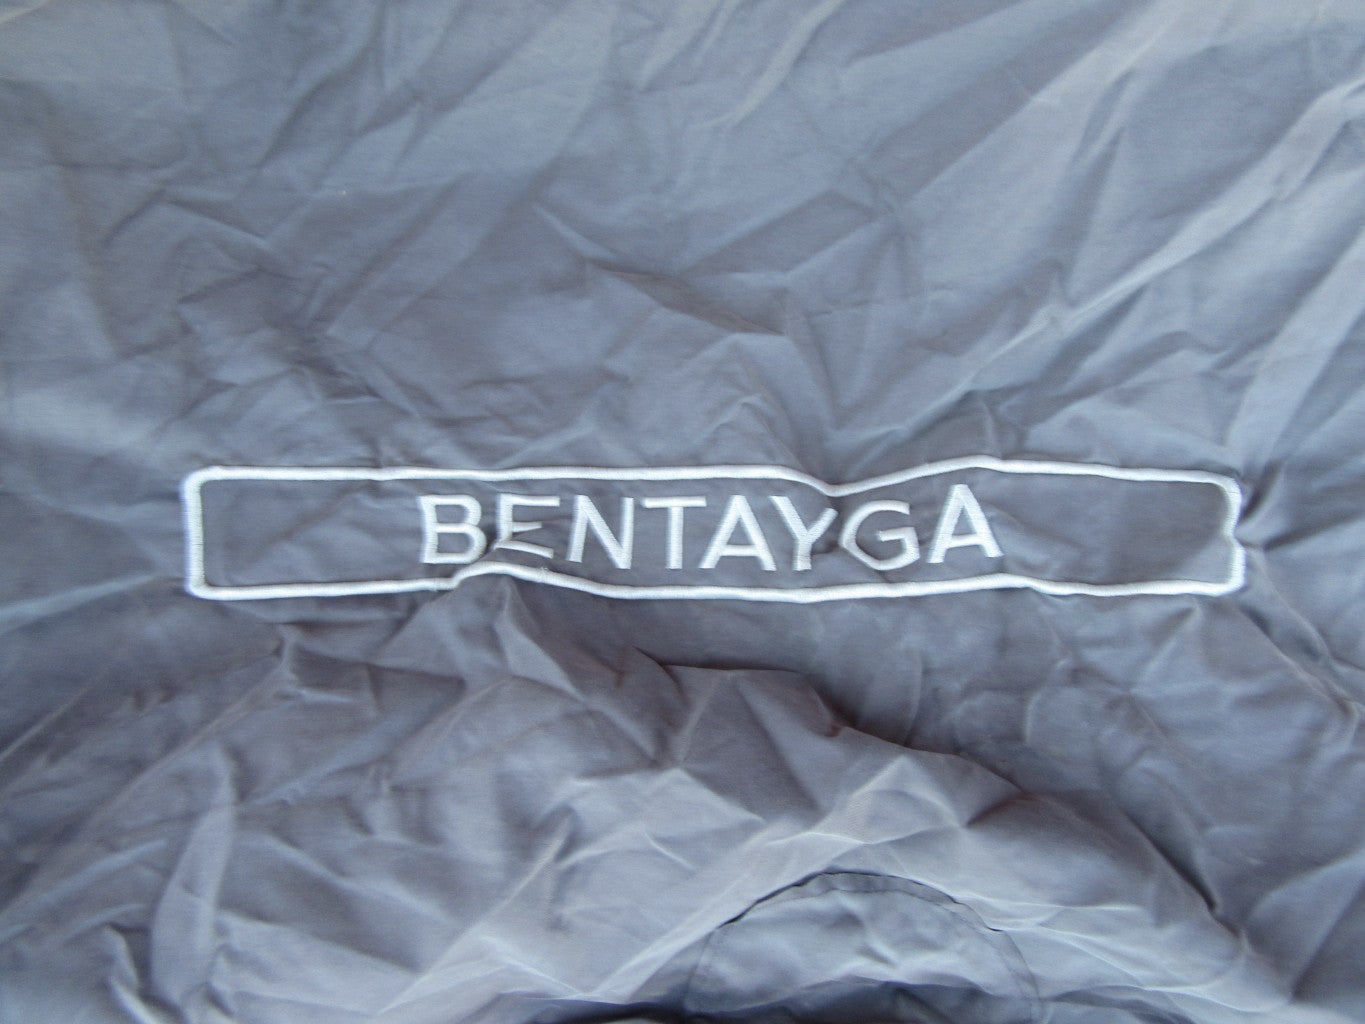 Bentley Bentayga outside car cover #2846